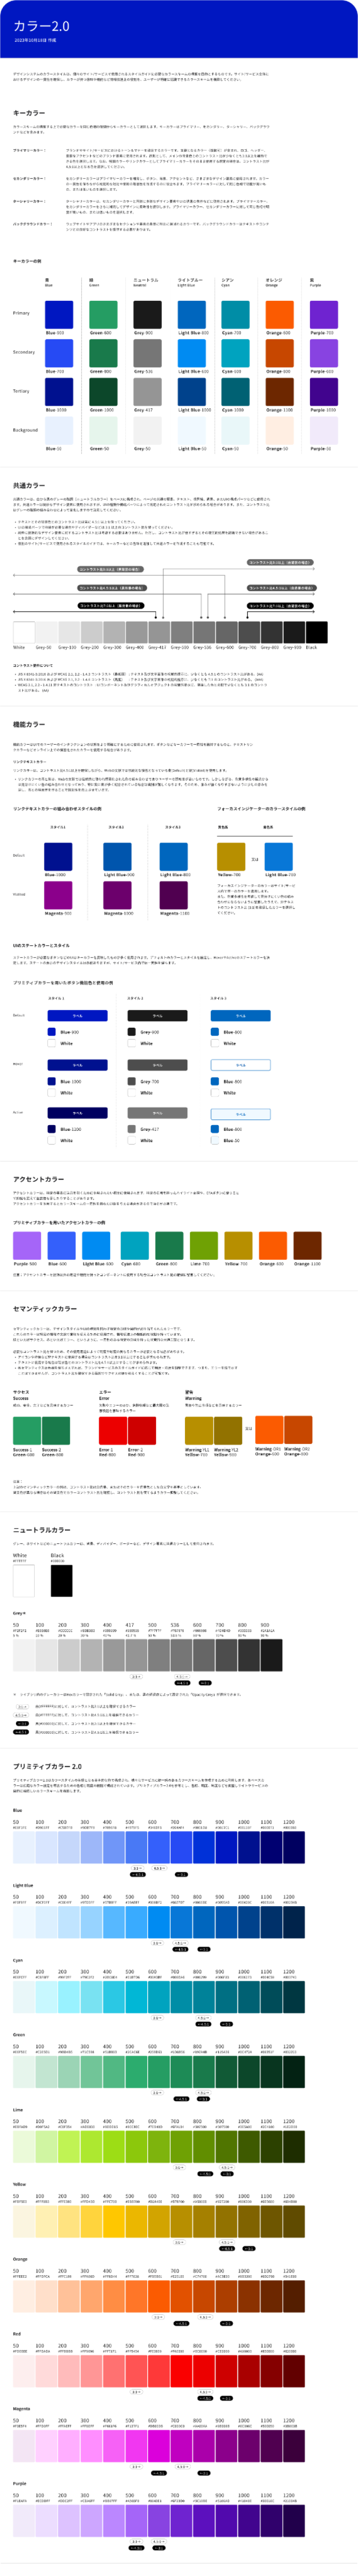 カラー2.0全体のスクリーンキャプチャ。上から「キーカラー」「共通カラー」「機能カラー」「アクセントカラー」「セマンティックカラー」「ニュートラルカラー」「プリミティブカラー2.0」の順に紹介している。